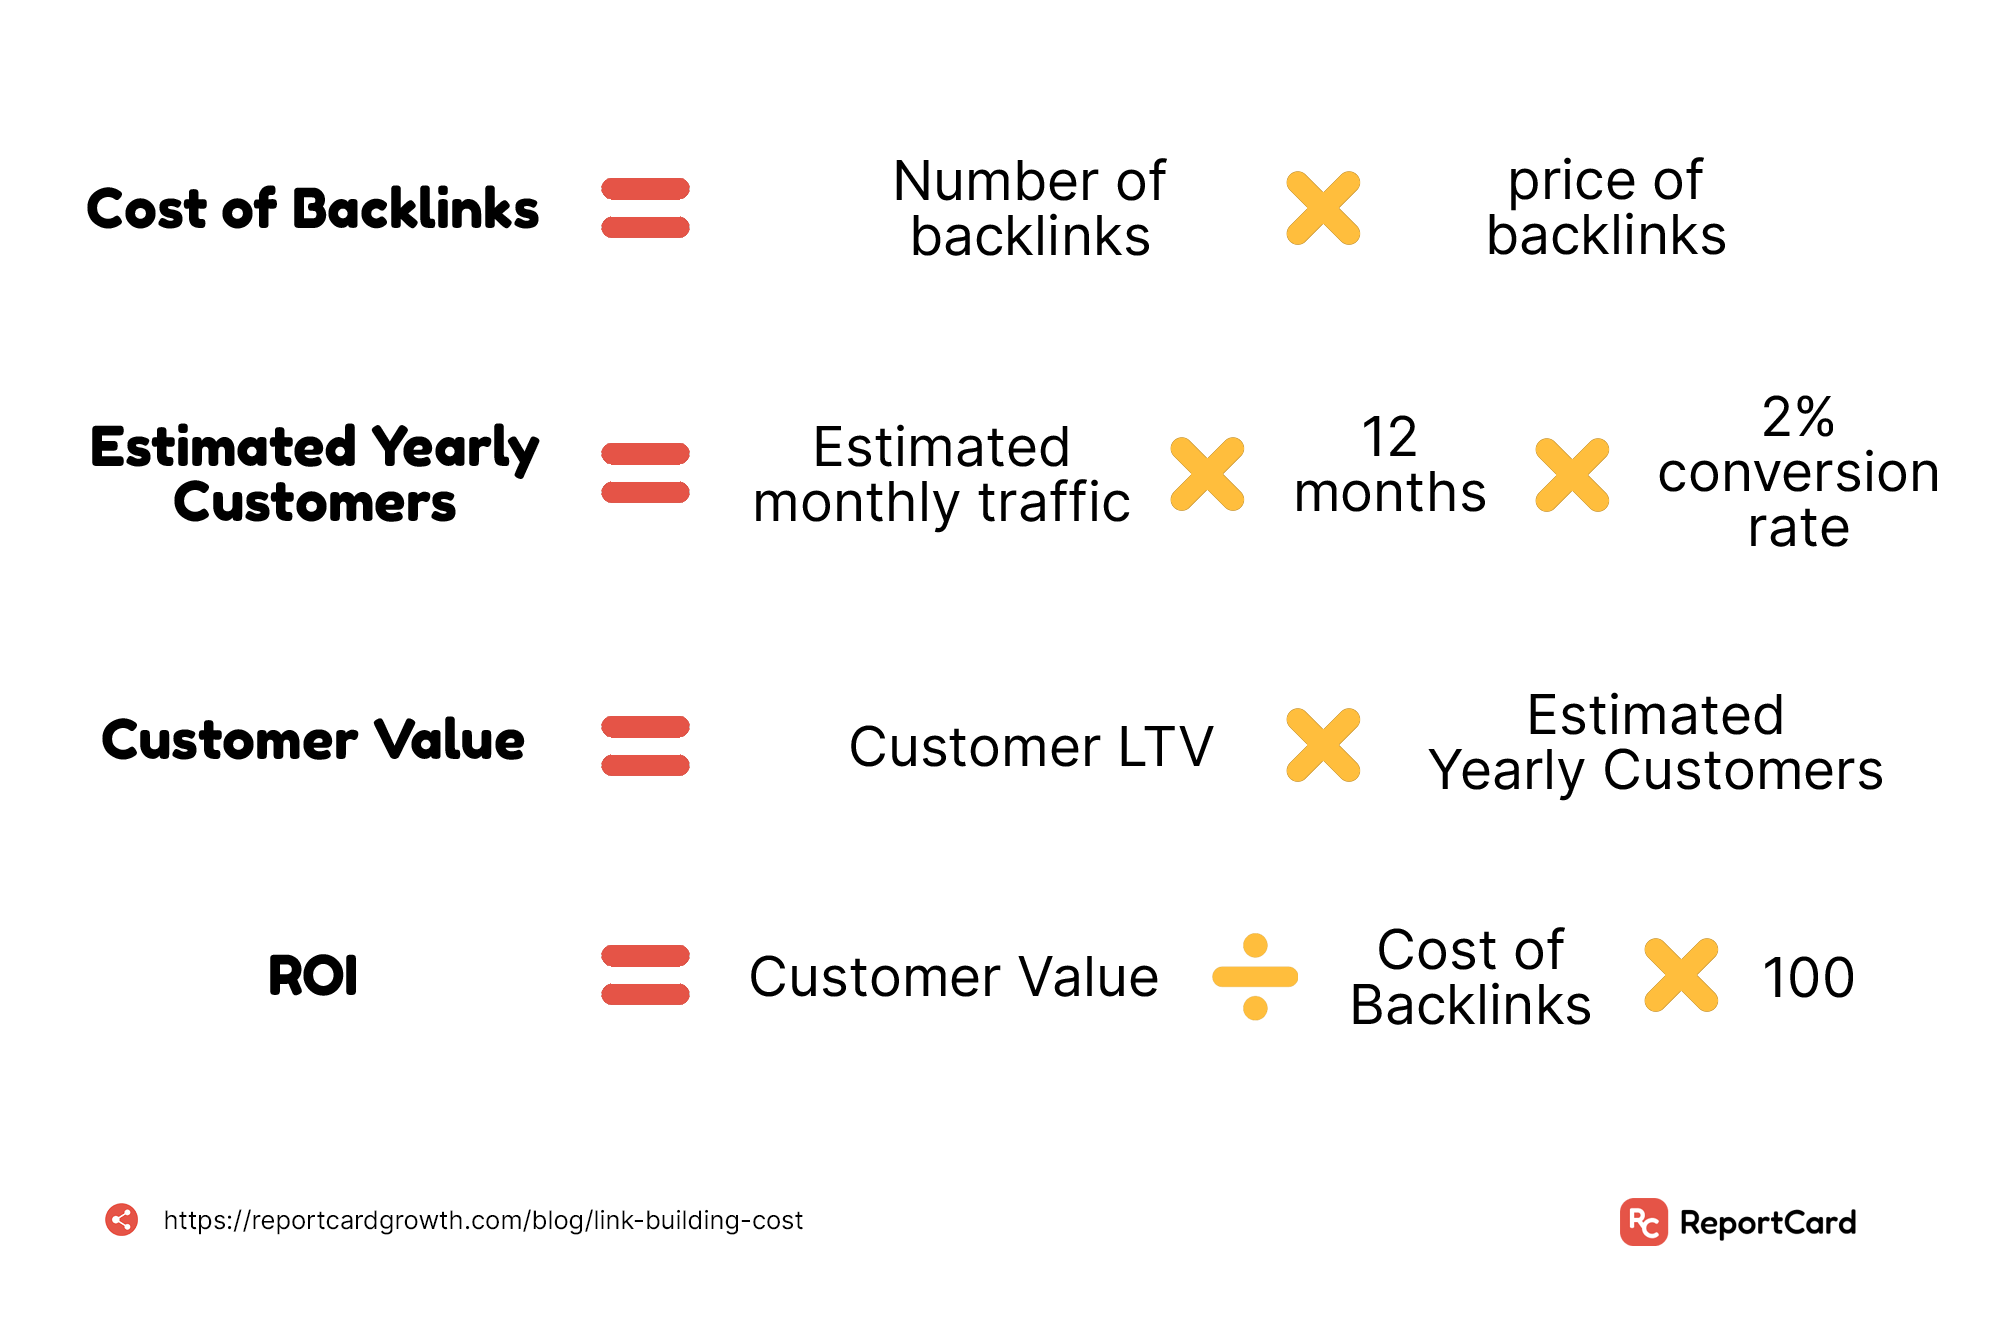 Should You Buy Backlinks or Not?